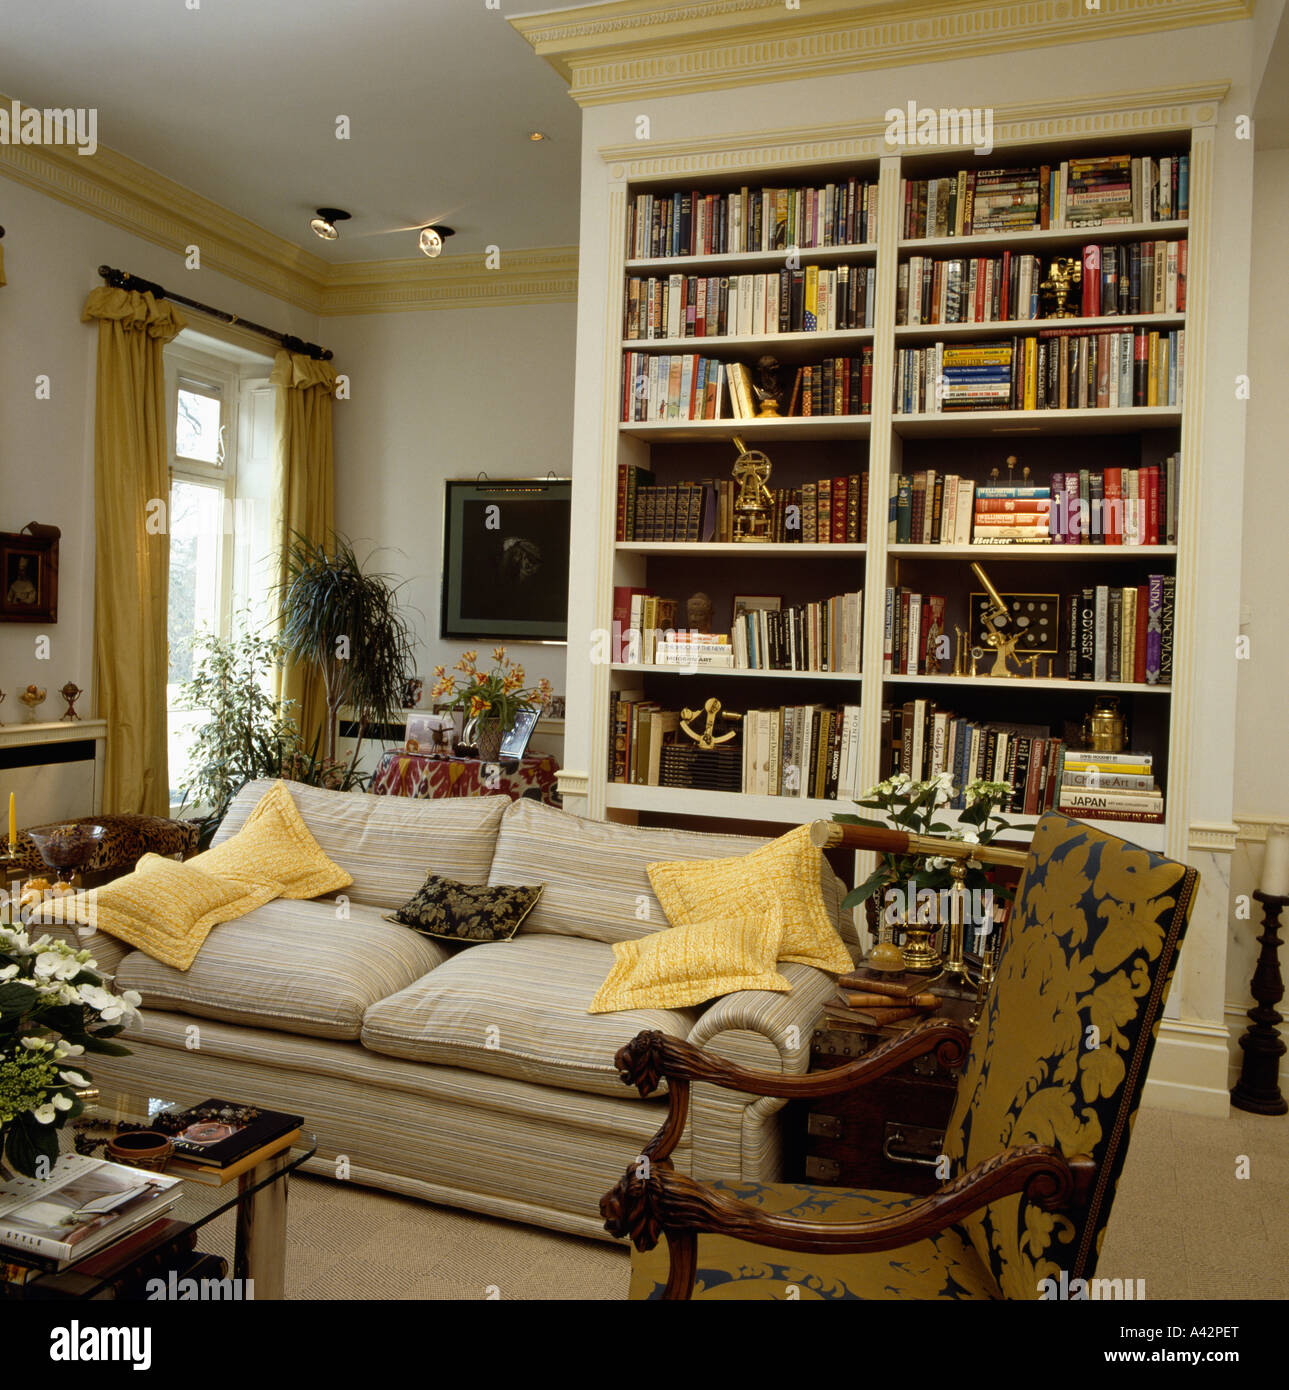 Gartenhaus mit Beige Sofa und gelben Kissen vor raumhohen Regalen  Stockfotografie - Alamy